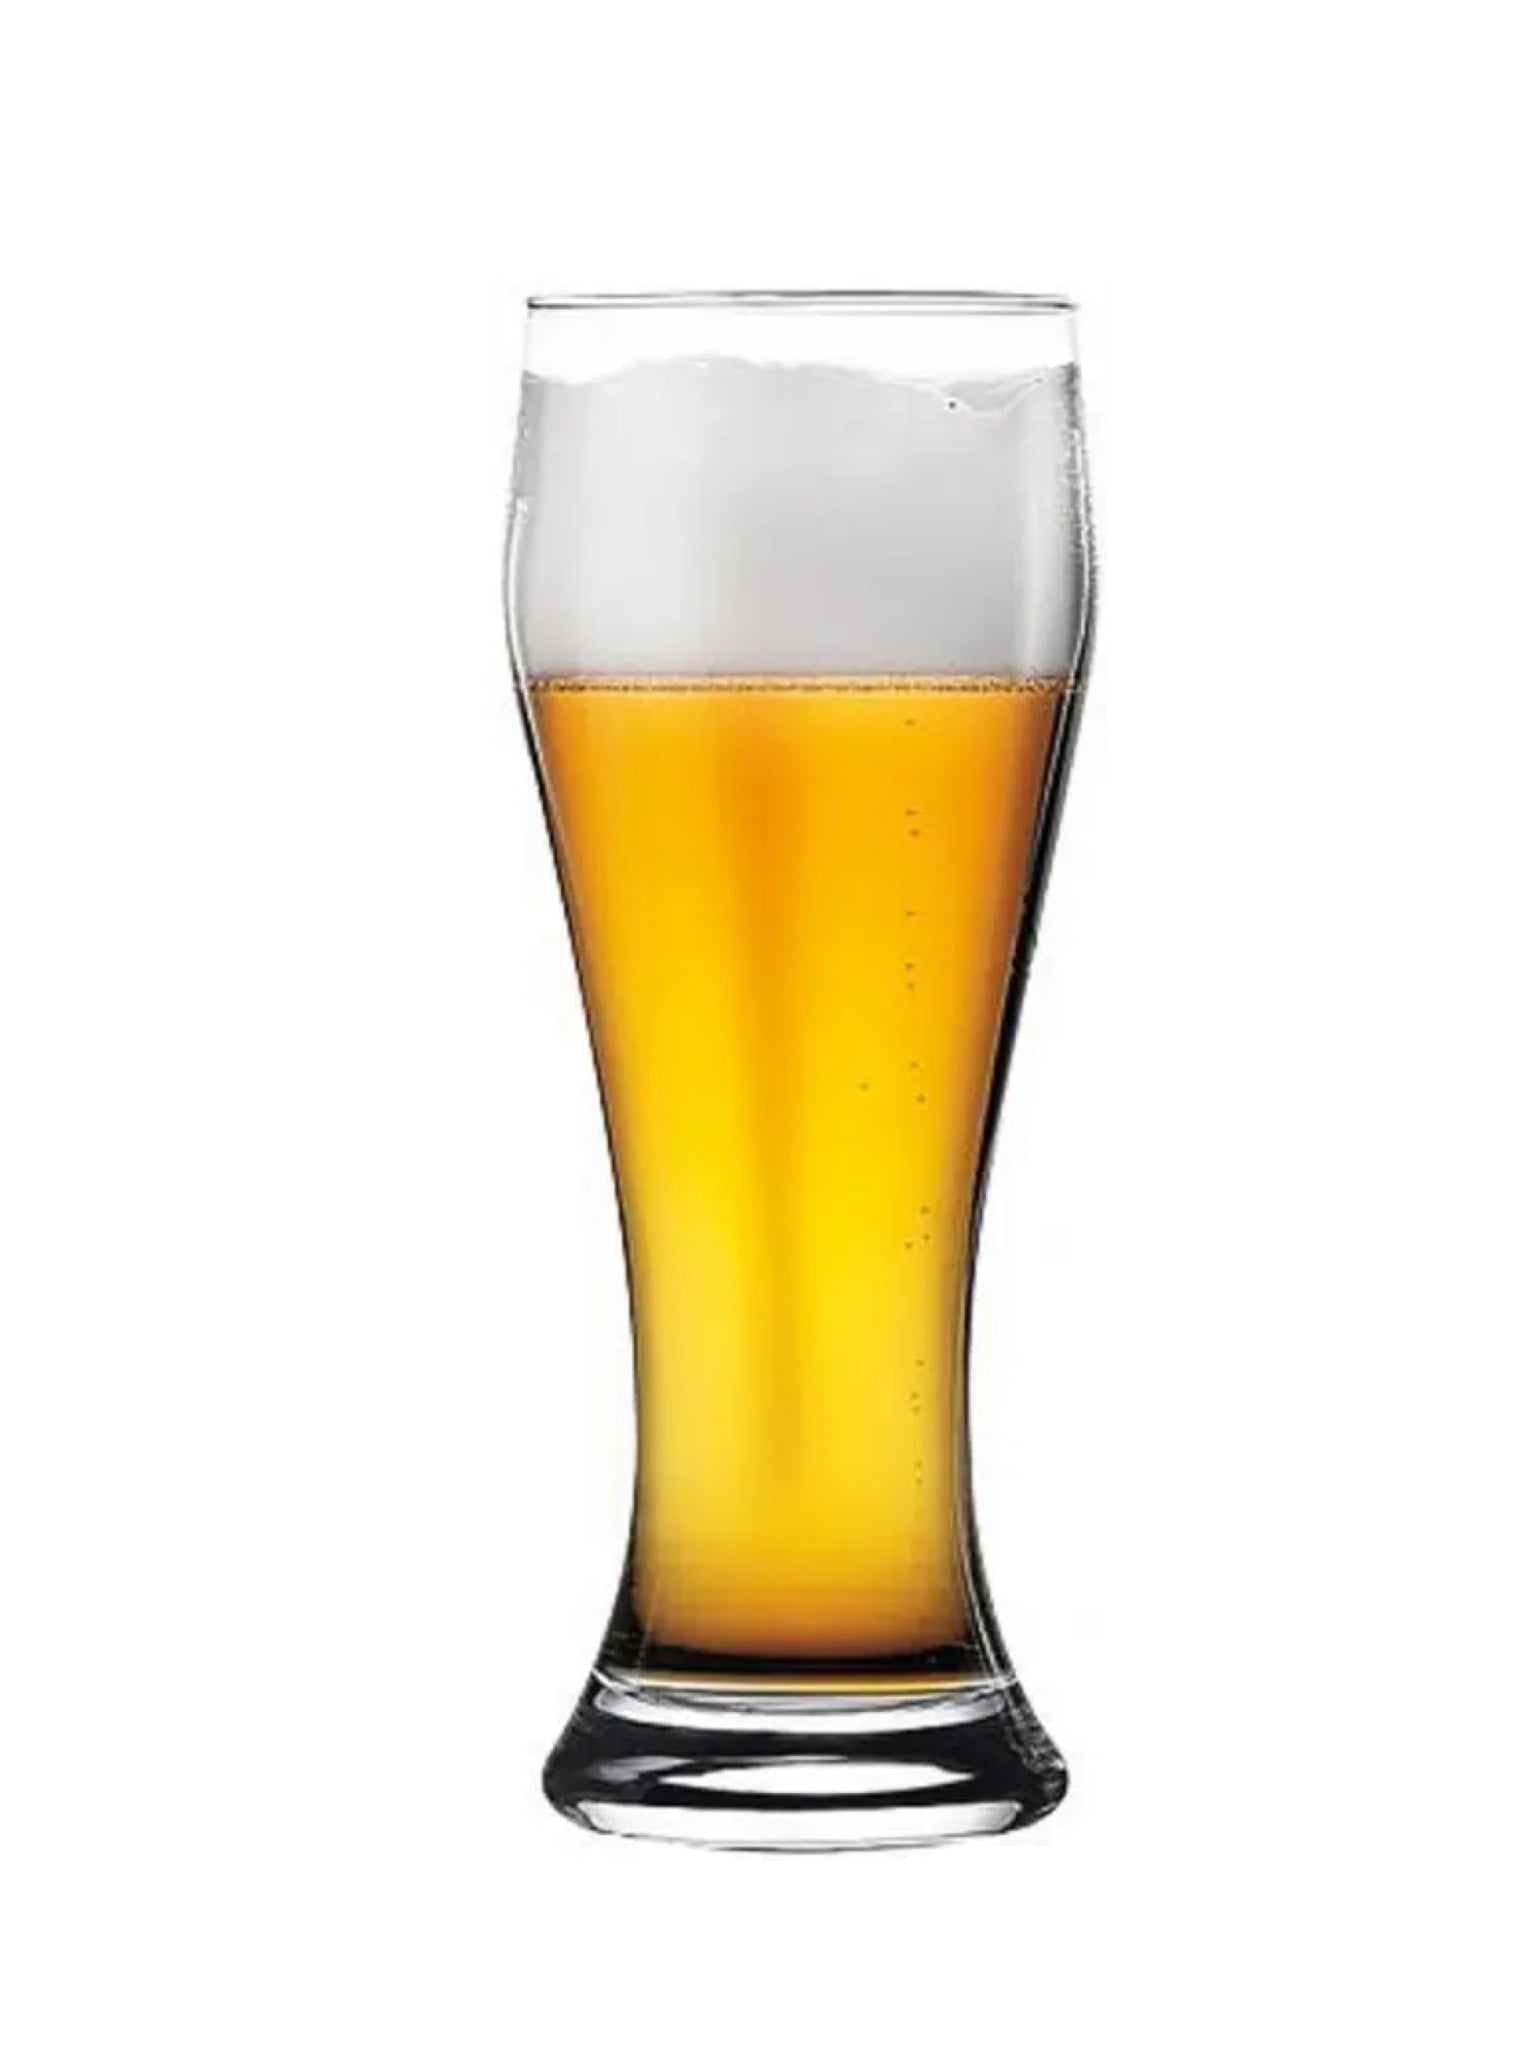 Glas für Weizenbier und Pilsner mit einem Fassungsvermögen von 66,5 cl - eine stilvolle Wahl für den Bierausschank.